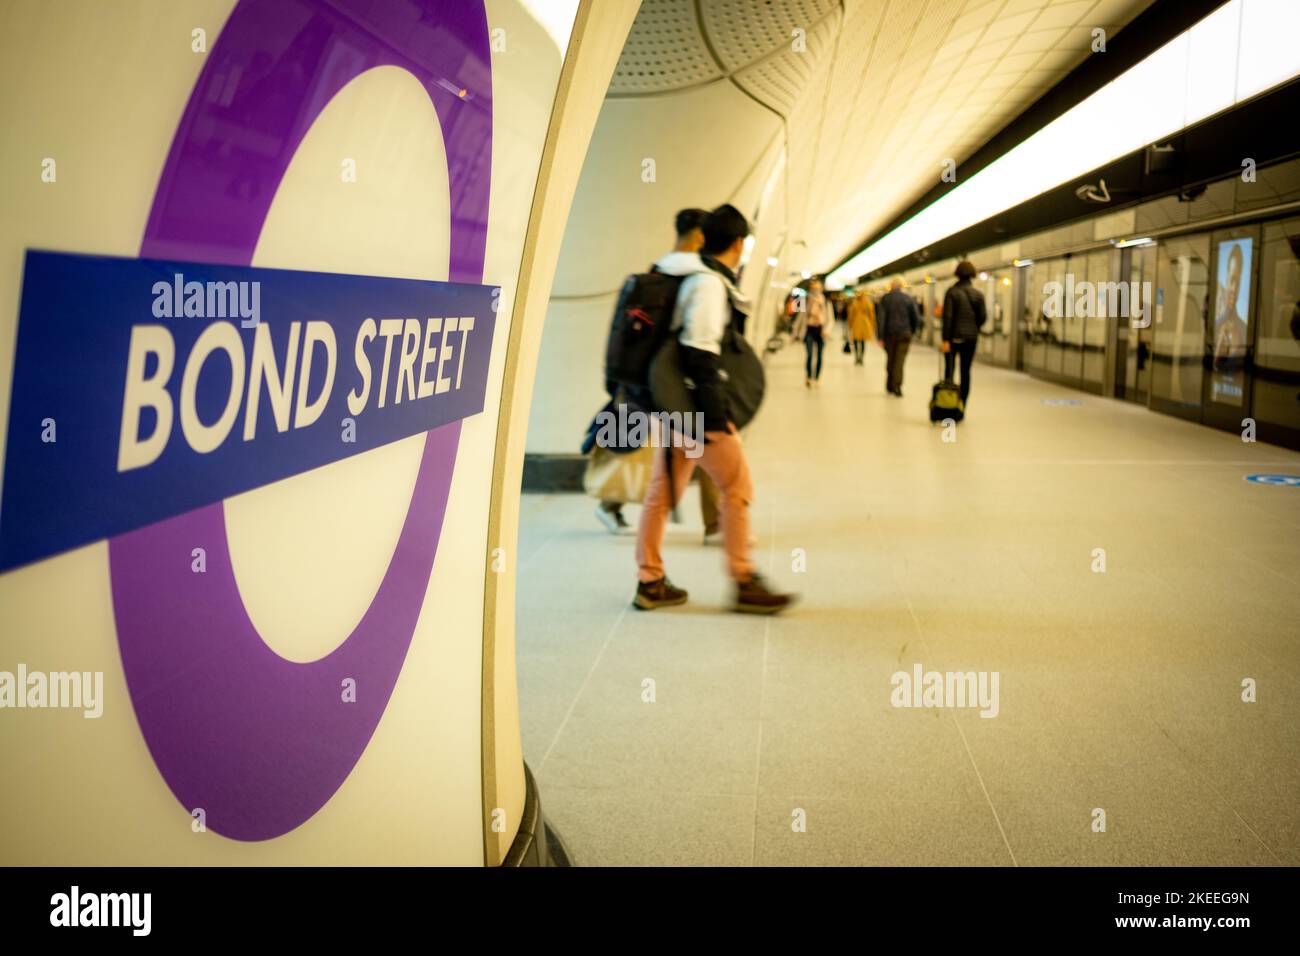 Londra - Novembre 2022: Piattaforma della linea Elizabeth Station di Bond Street e segnaletica interna Foto Stock